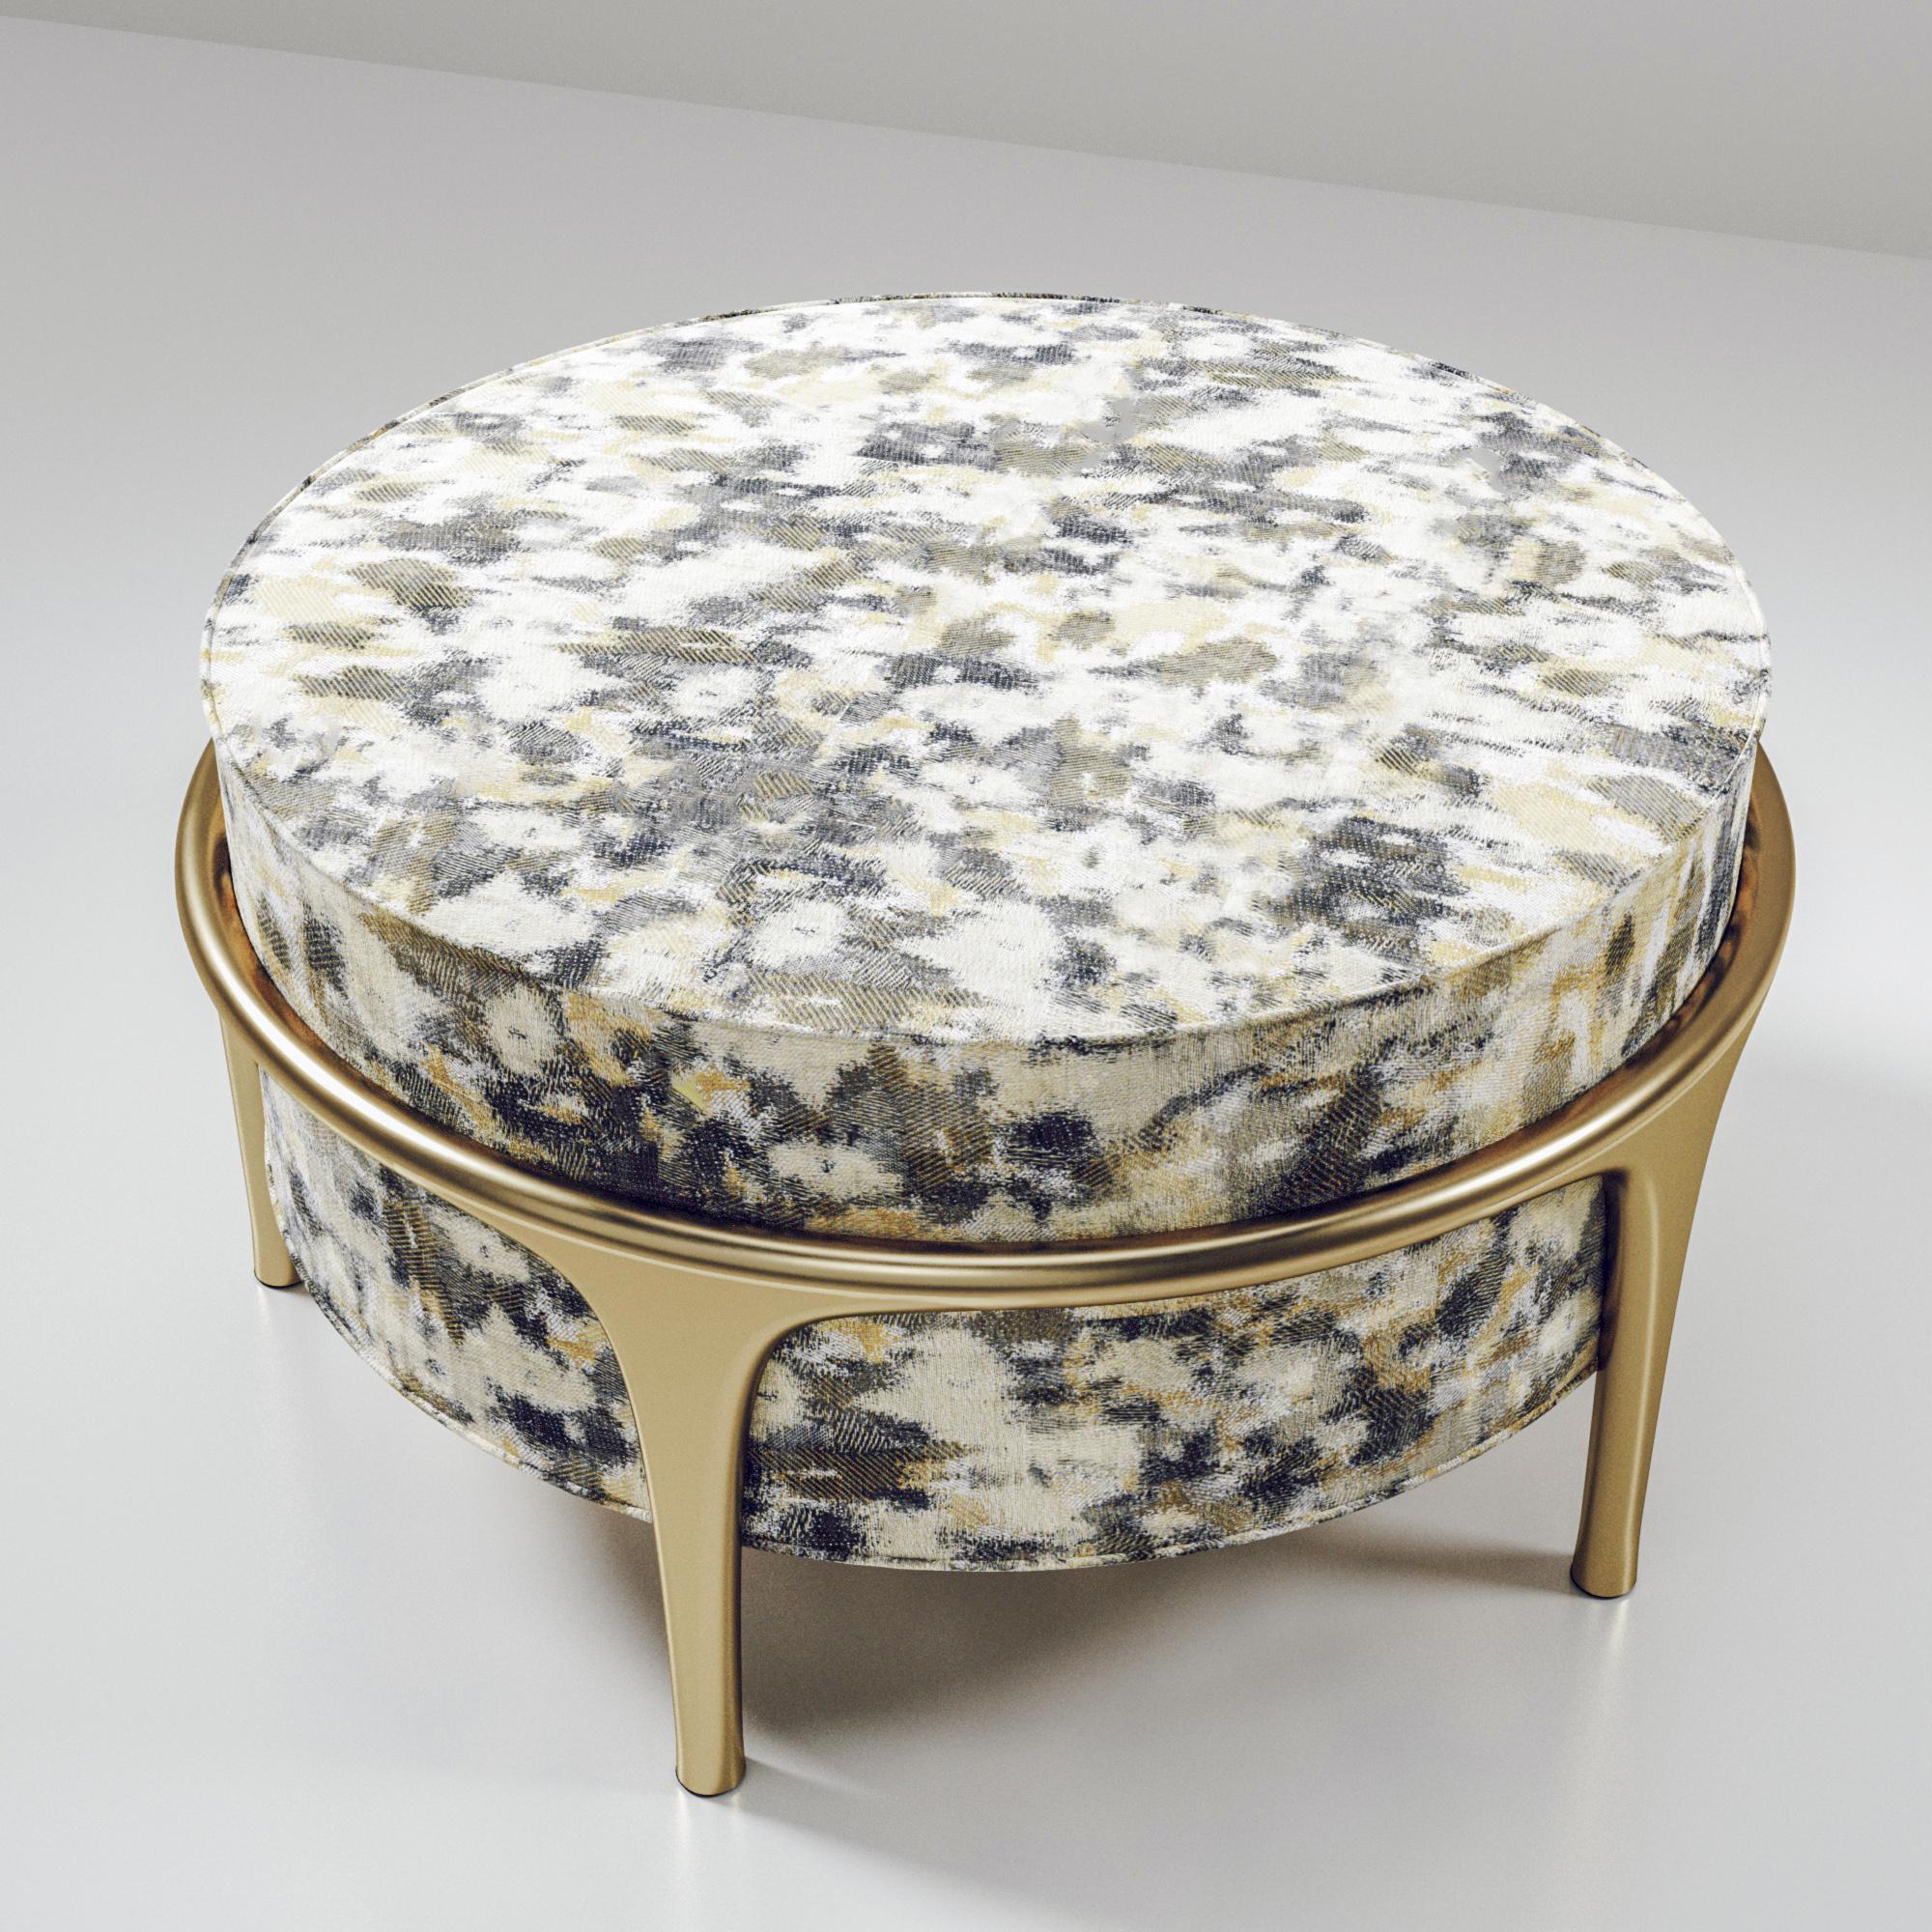 Der Hocker Ramo von R & Y Augousti ist ein elegantes und vielseitiges Möbelstück. Die Polstermöbel bieten Komfort und bewahren mit dem Gestell und den Details aus Messing in Bronze-Patina eine einzigartige Ästhetik. Diese Auflistung ist für COM